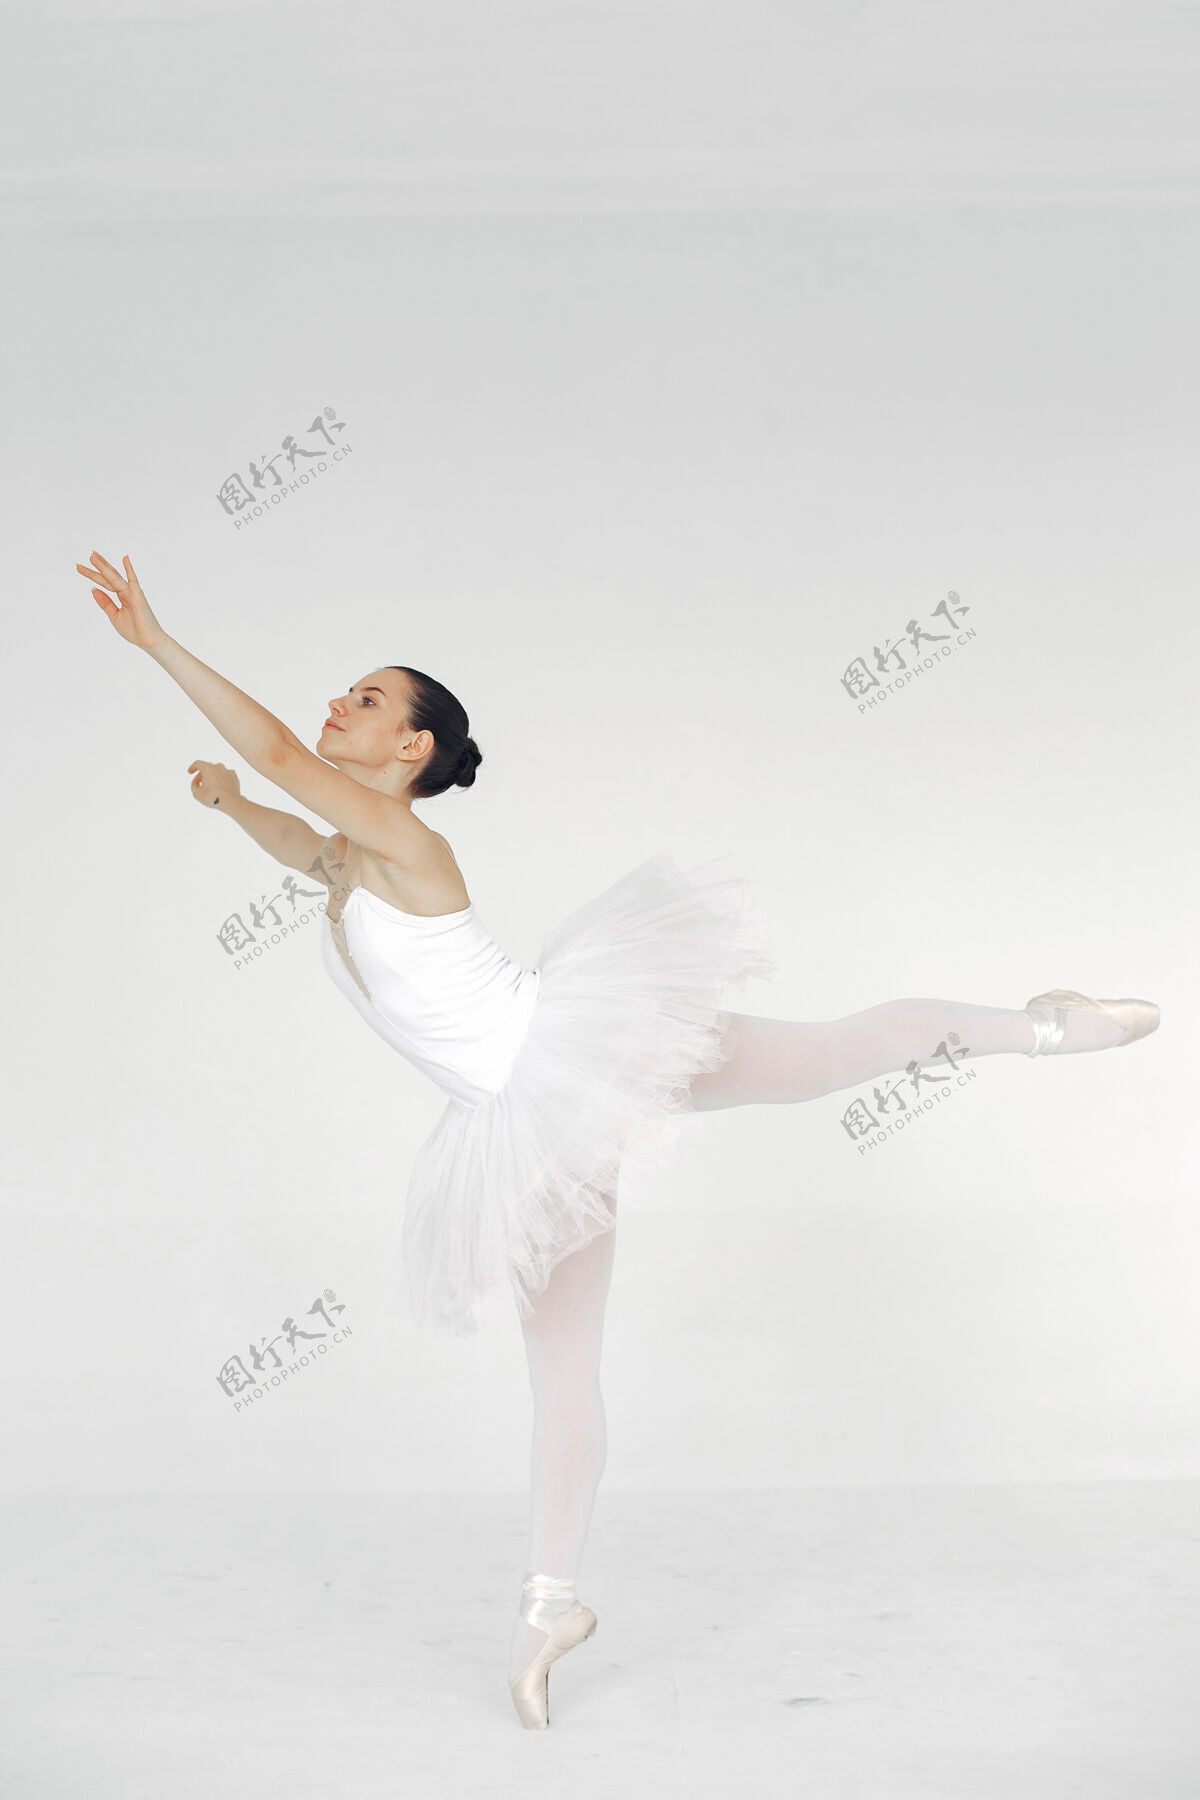 技巧漂亮的芭蕾舞演员尖角的芭蕾舞演员舞蹈女子优雅